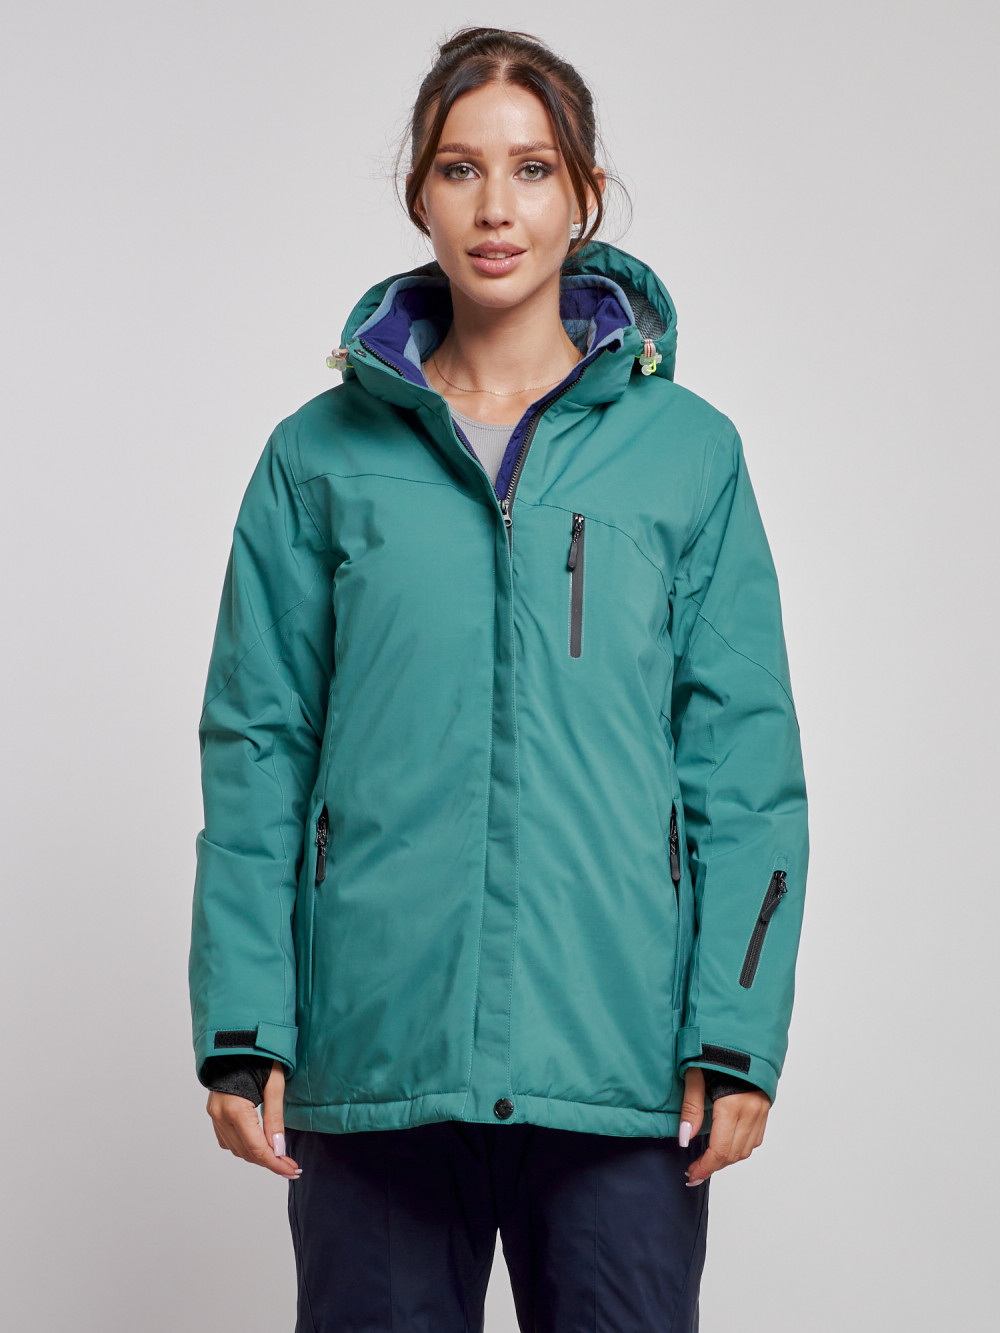 Купить оптом Горнолыжная куртка женская зимняя большого размера зеленого цвета 3936Z в Екатеринбурге